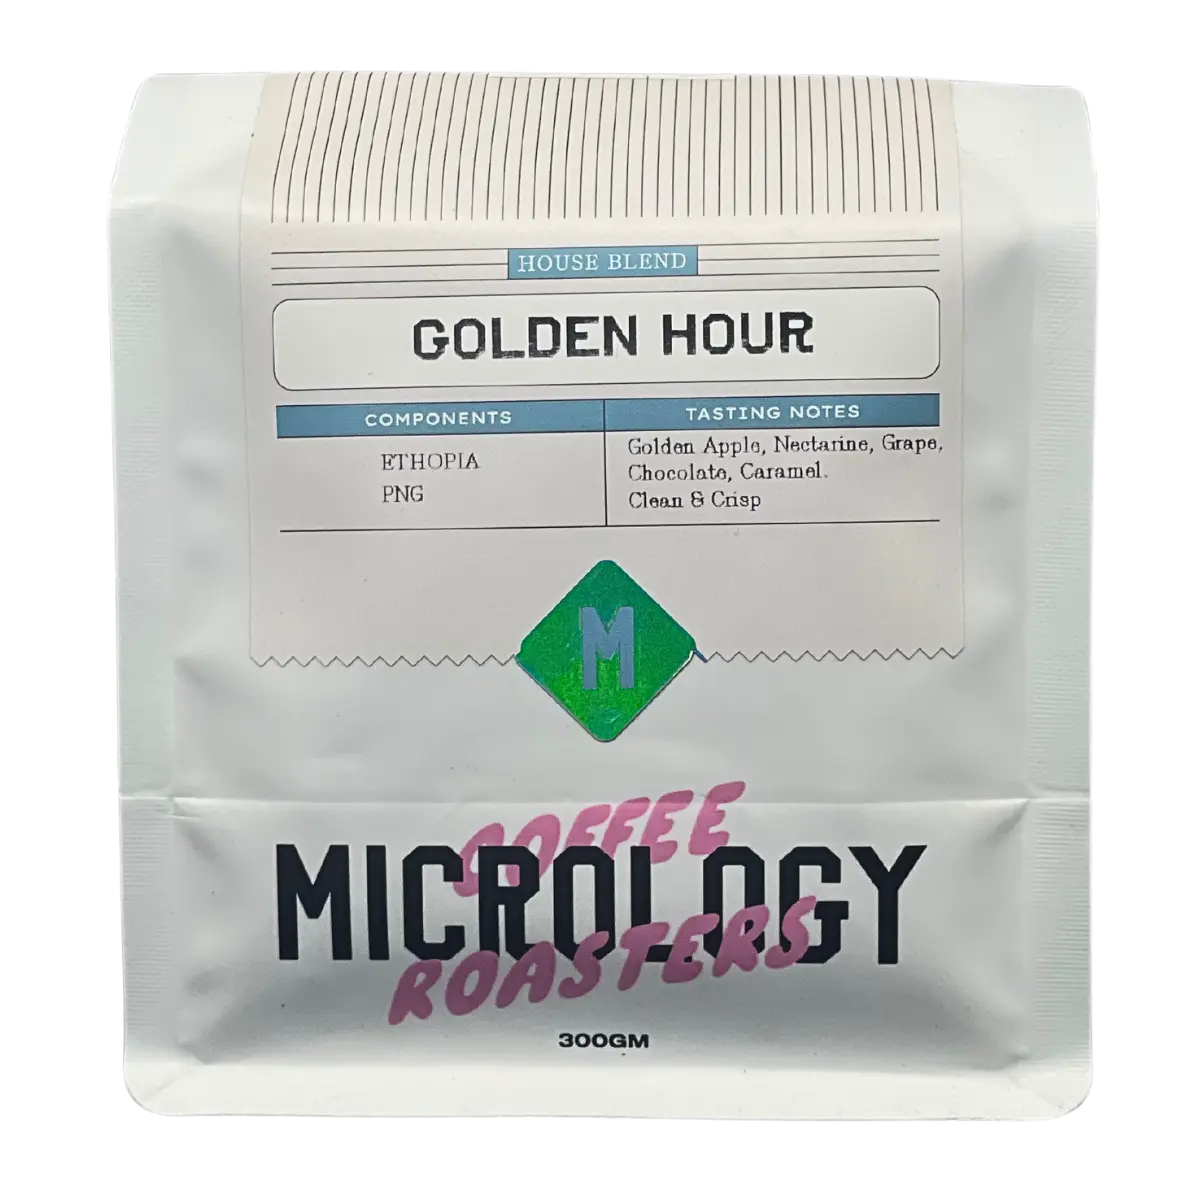 Golden Hour Filter Blend Micrology